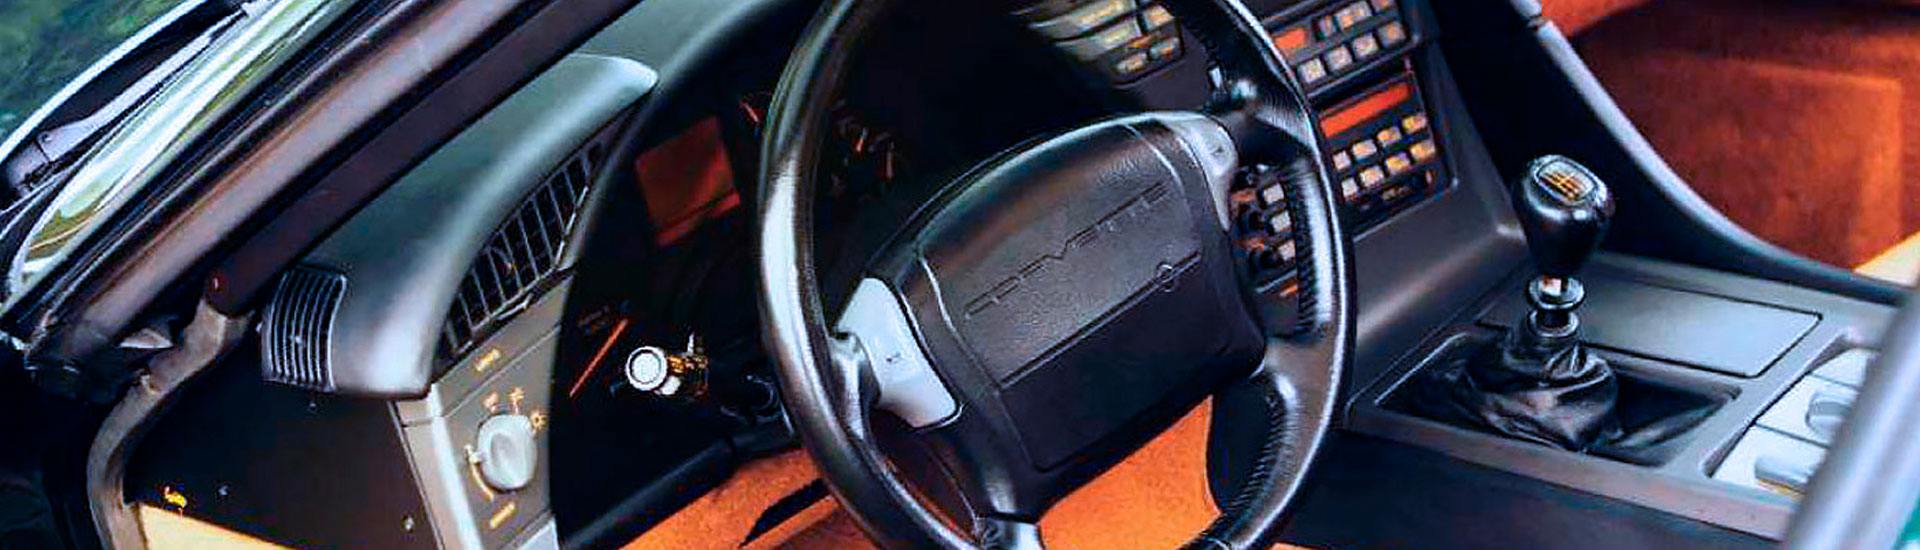 1991 Chevrolet Corvette Dash Kits